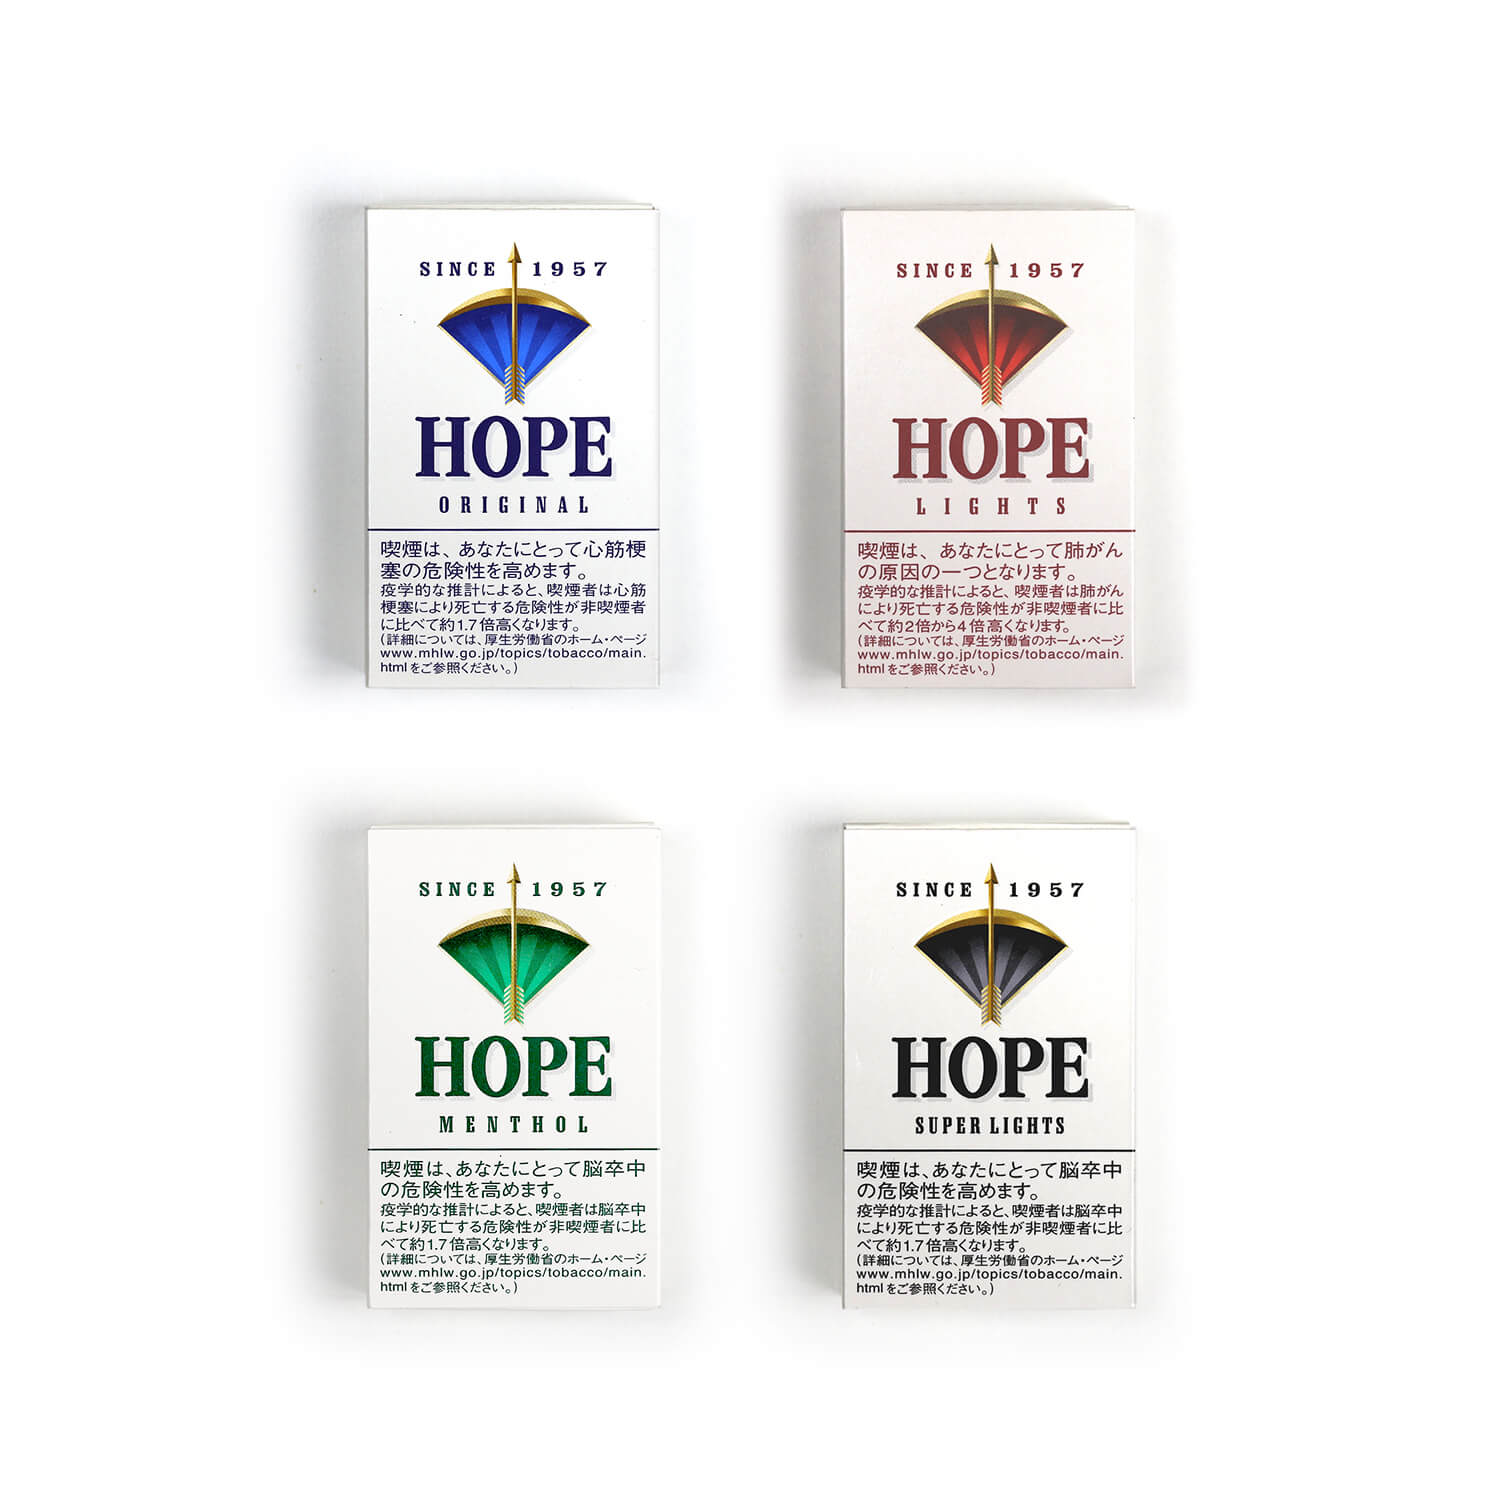 HOPEのパッケージデザイン